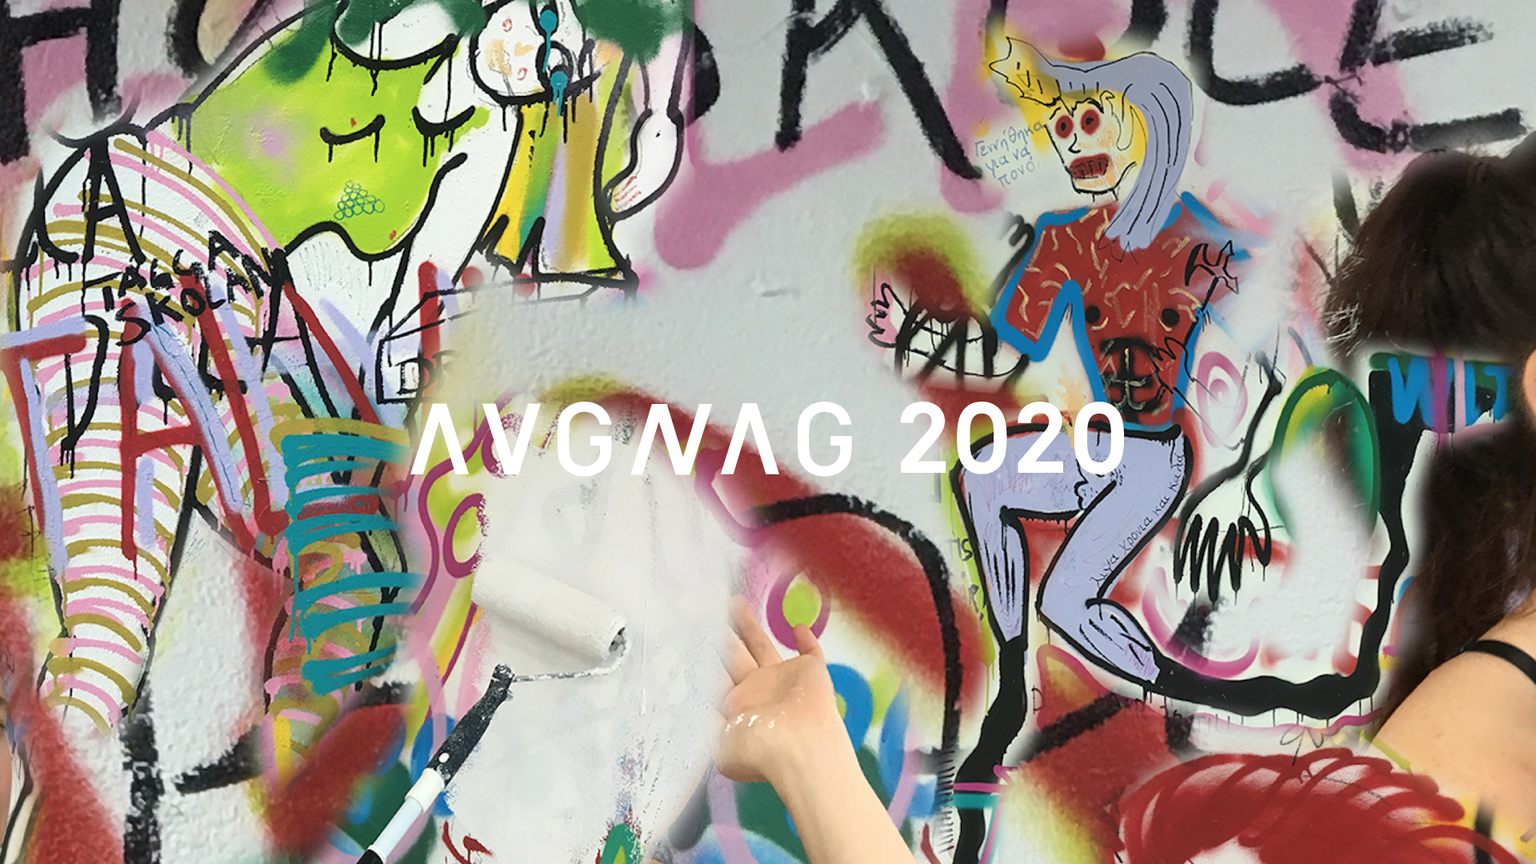 Avgang 2020: Book launch - AVGNAG 2020